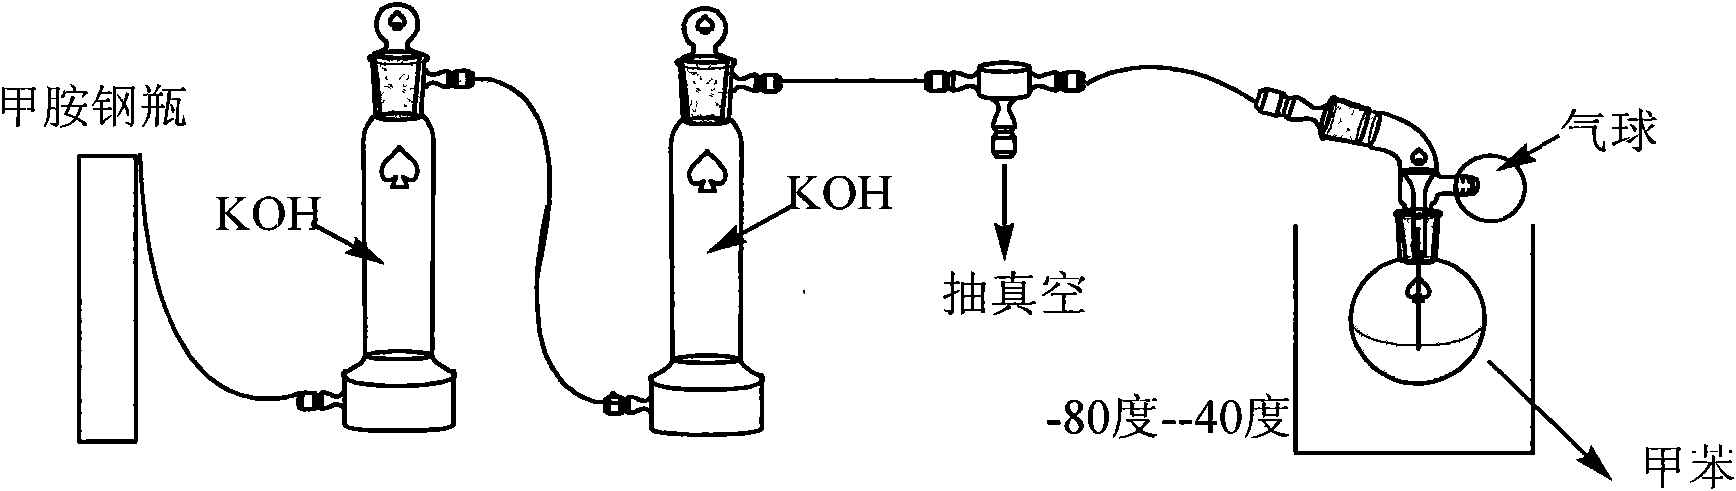 Method for preparing borosilazane ceramic fiber precursor